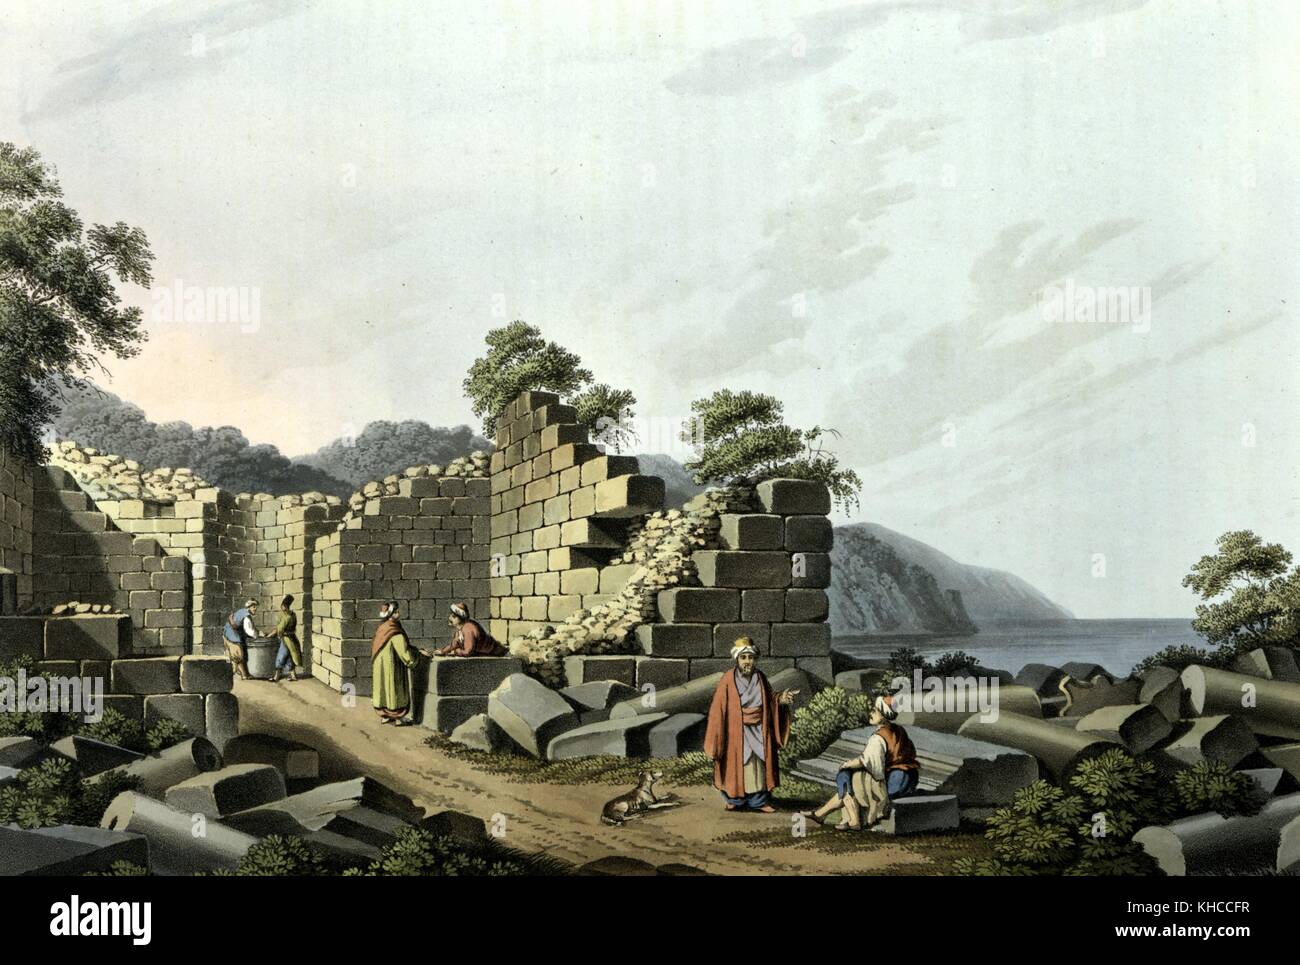 Ruines de l'ancien temple sur l'île de Samos, gravure de Luigi Mayer, 1805. De la Bibliothèque publique de New York. Banque D'Images